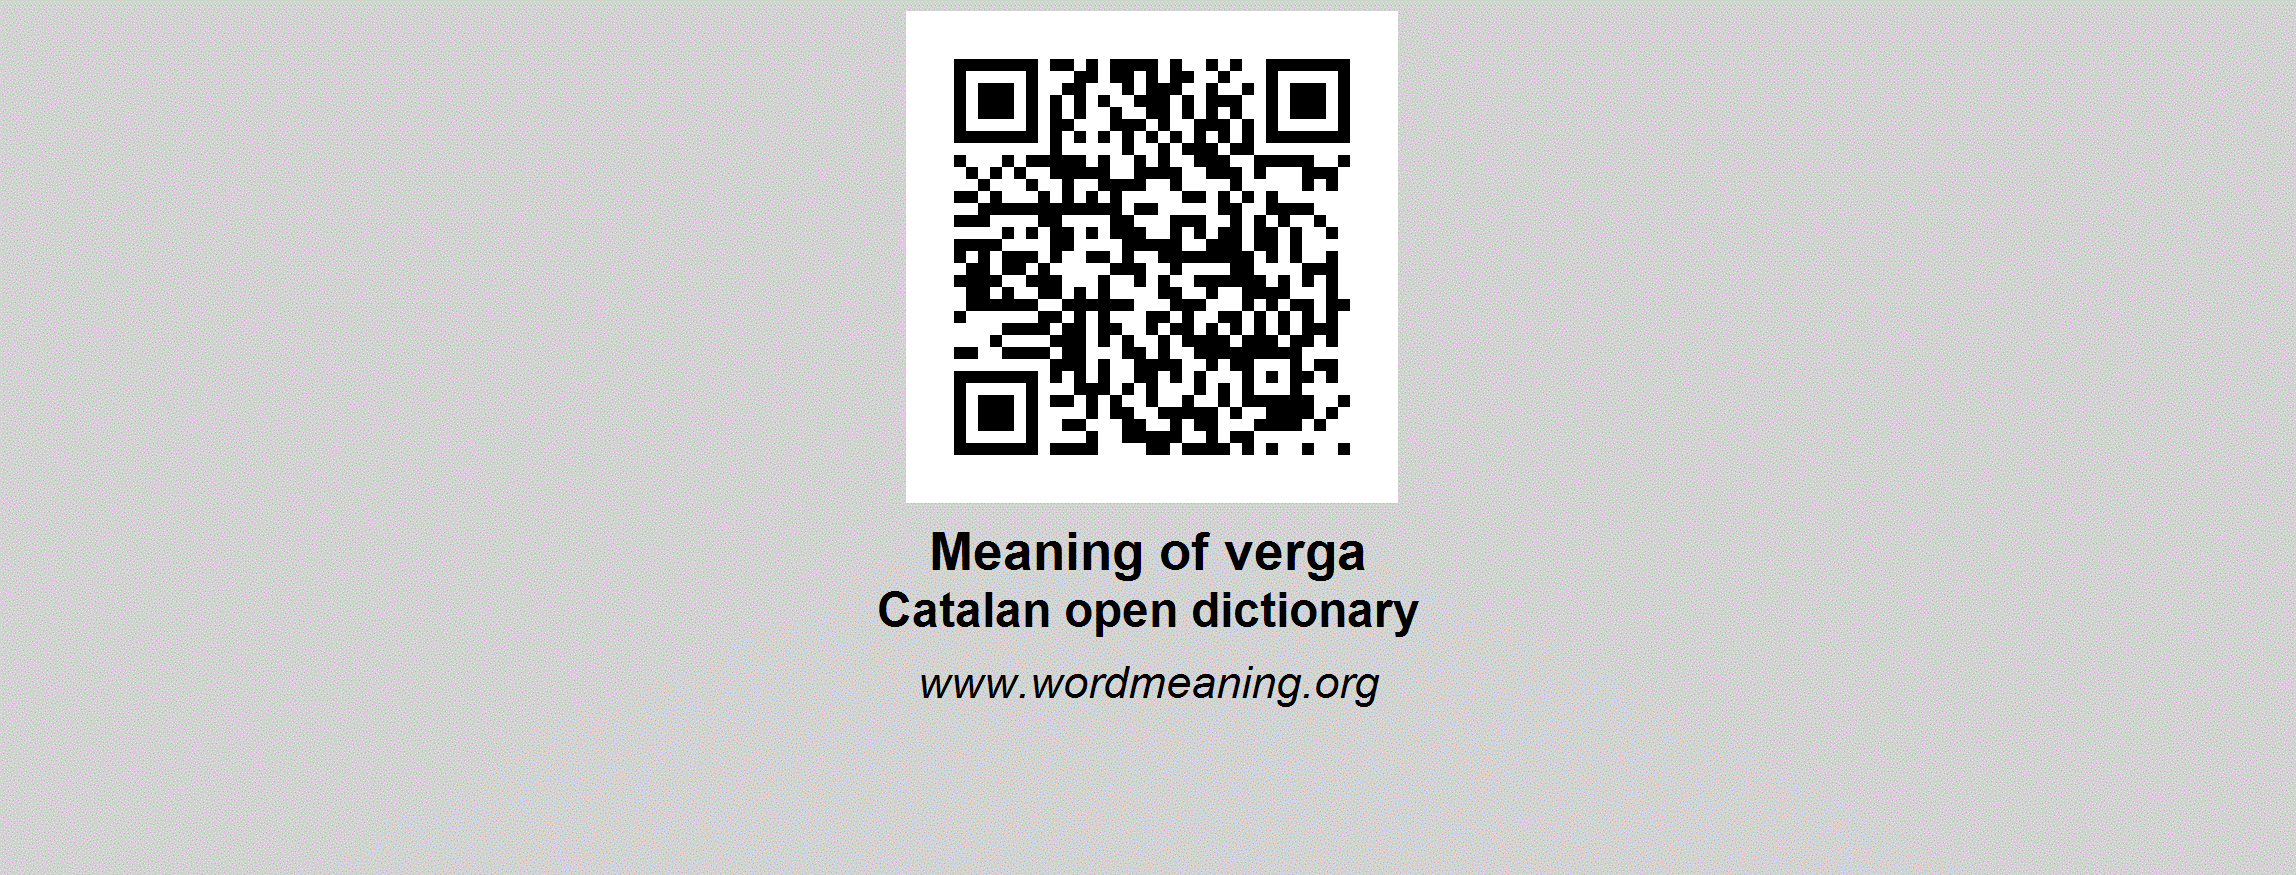 VERGA - Catalan open dictionary